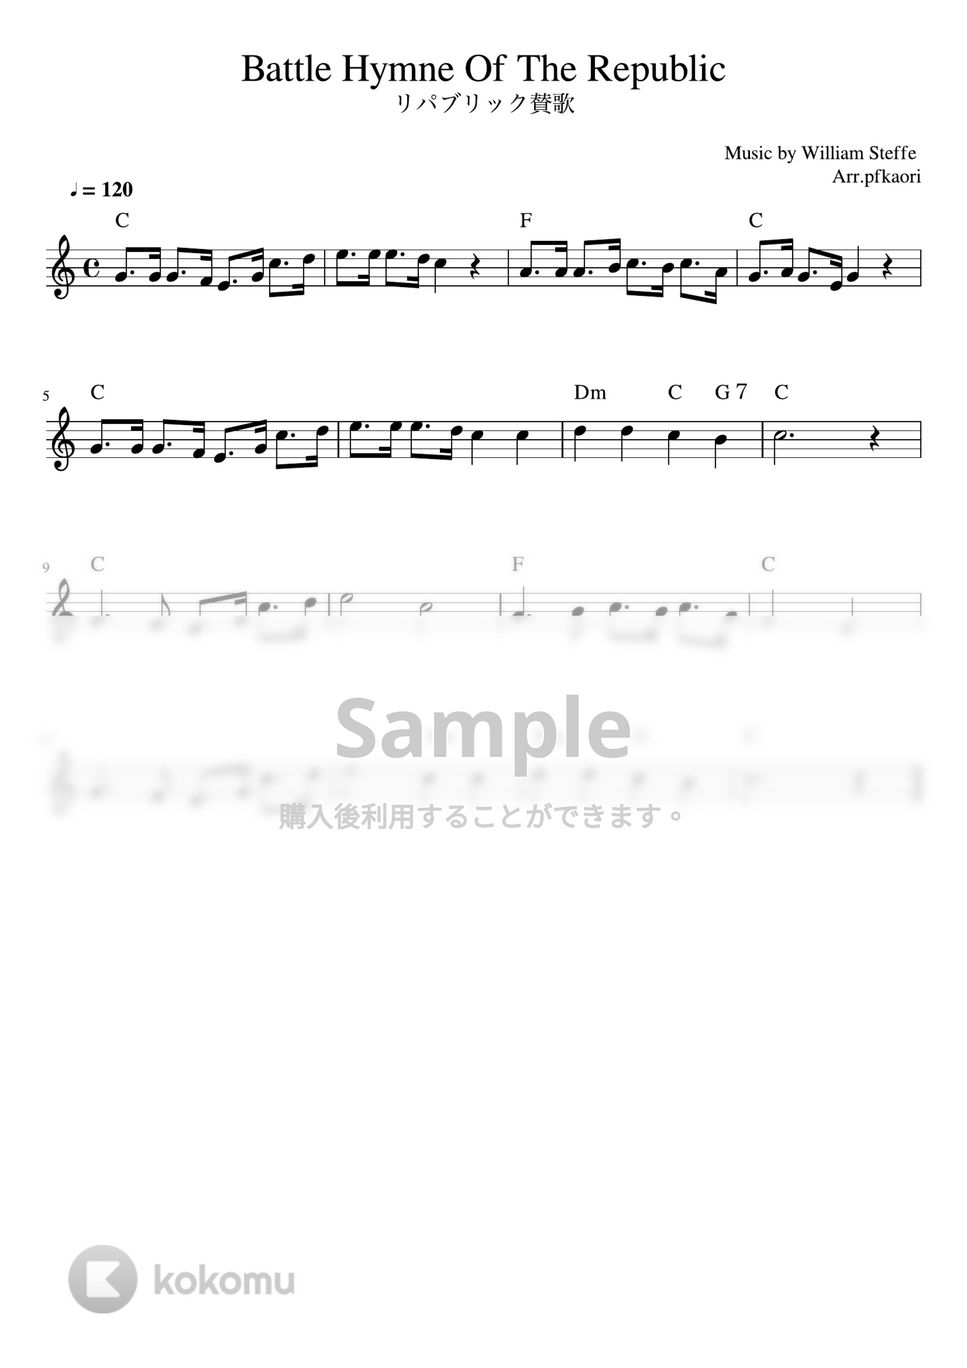 リパブリック讃歌 (メロディーコード) by pfkaori